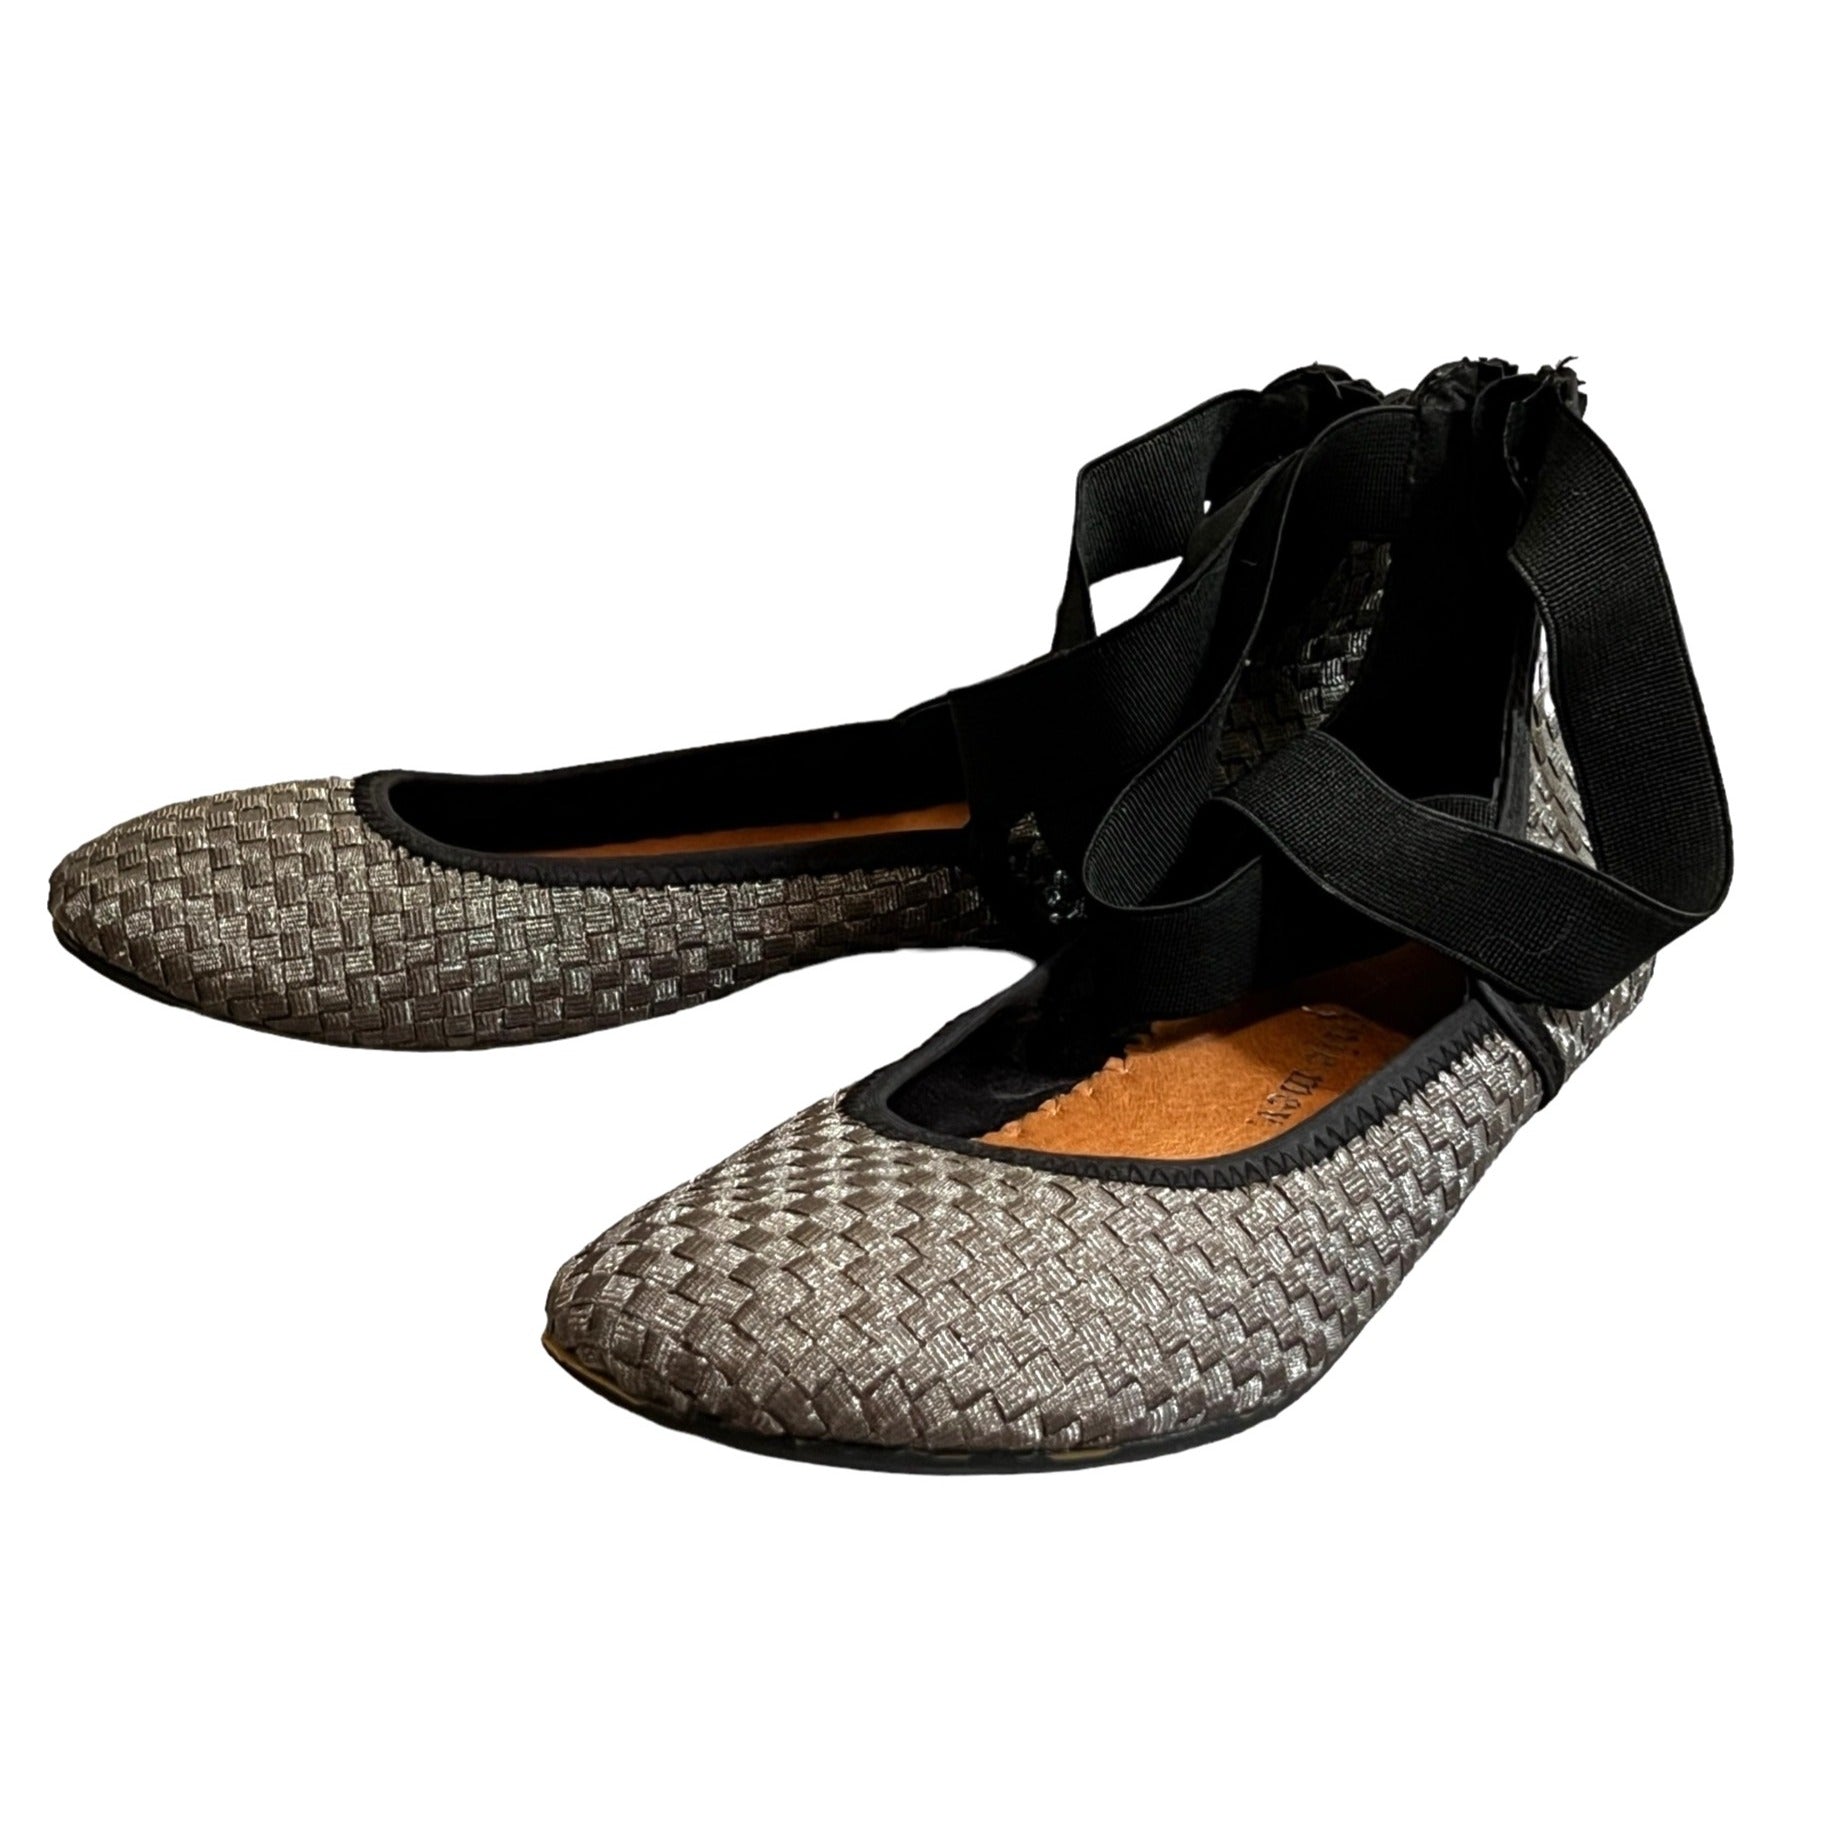 Bernie Mev Metallic Woven Ankle Strap Flats Sz 9 Womens Black & Silver Shoes